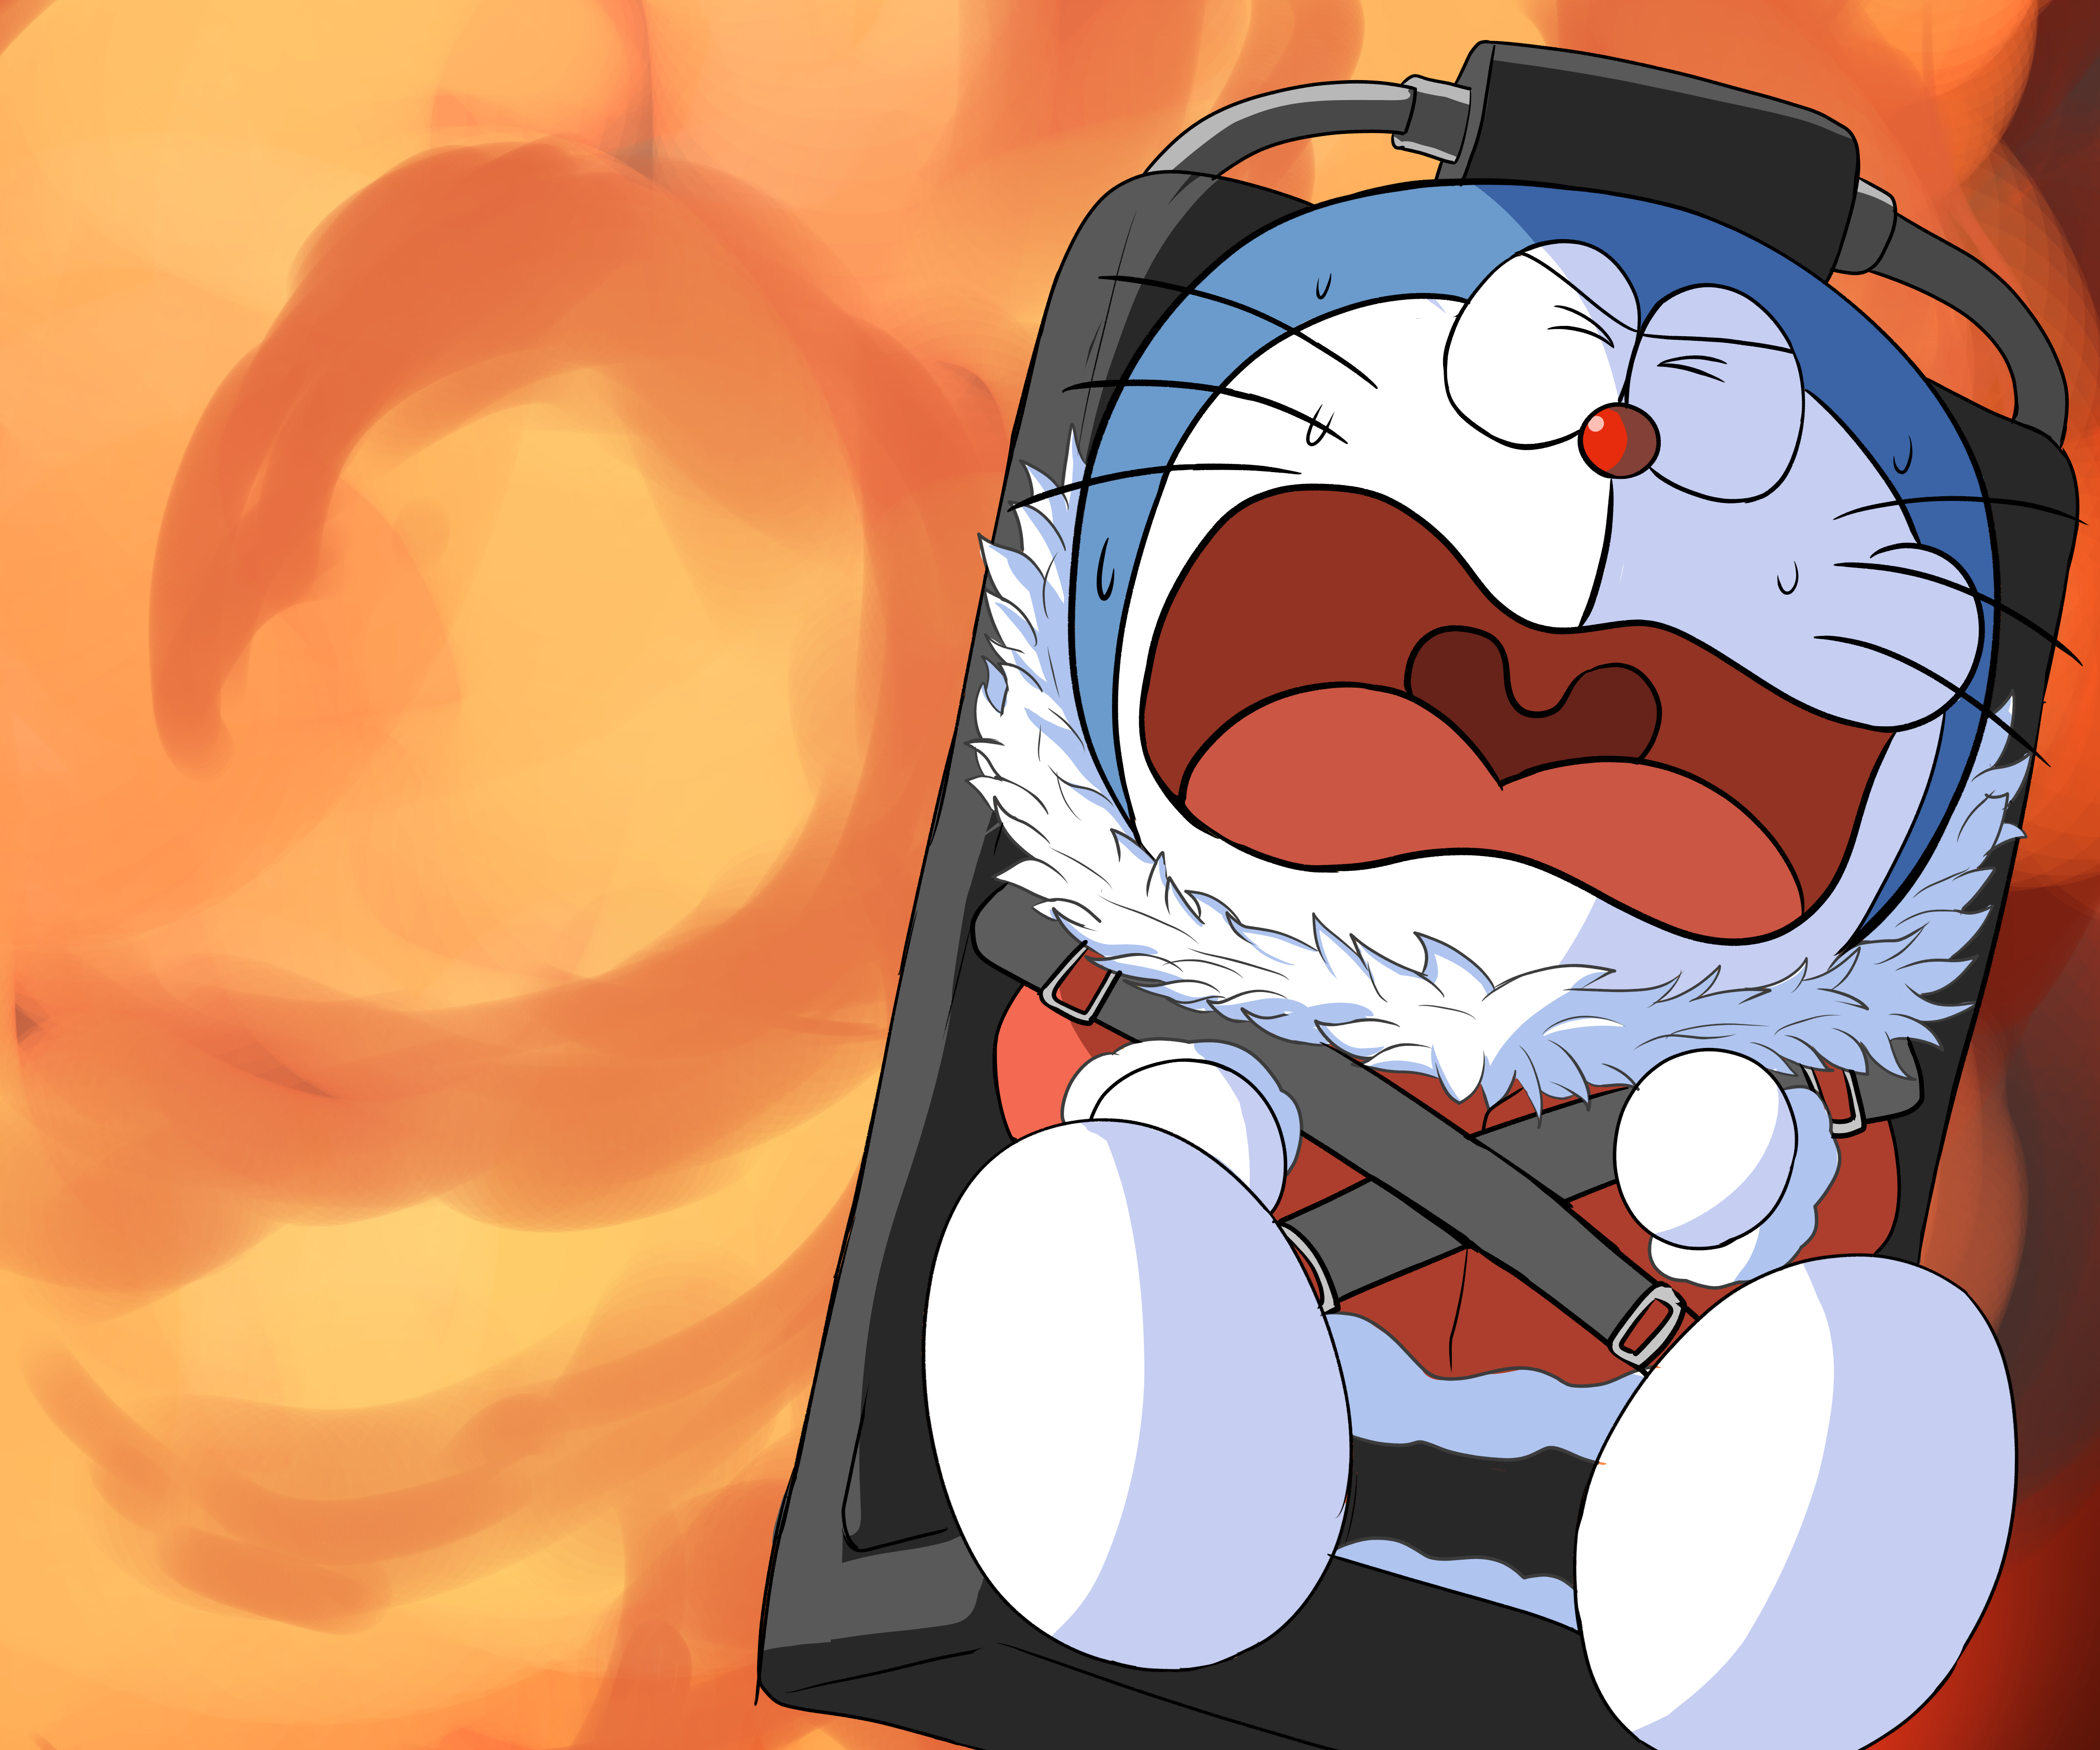 ĐỪNG TIN DORAEMON !!! TẤT CẢ CHỈ TOÀN LÀ CÚ LỪA THÔI | Doraemon | Ten Anime  - YouTube